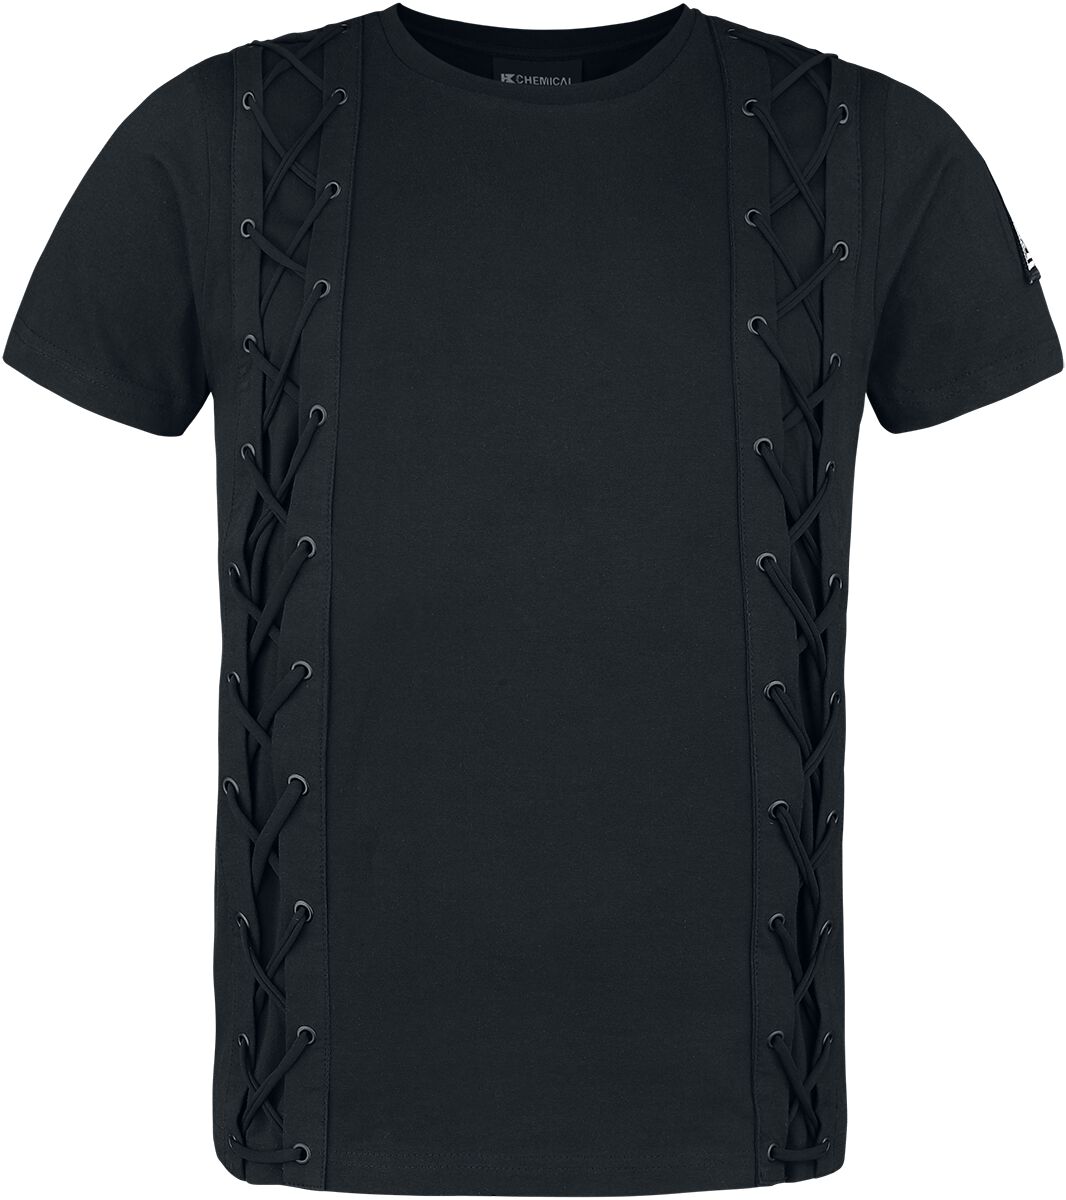 Chemical Black - Gothic T-Shirt - Gunner Top Mens Black - S bis 4XL - für Männer - Größe XL - schwarz